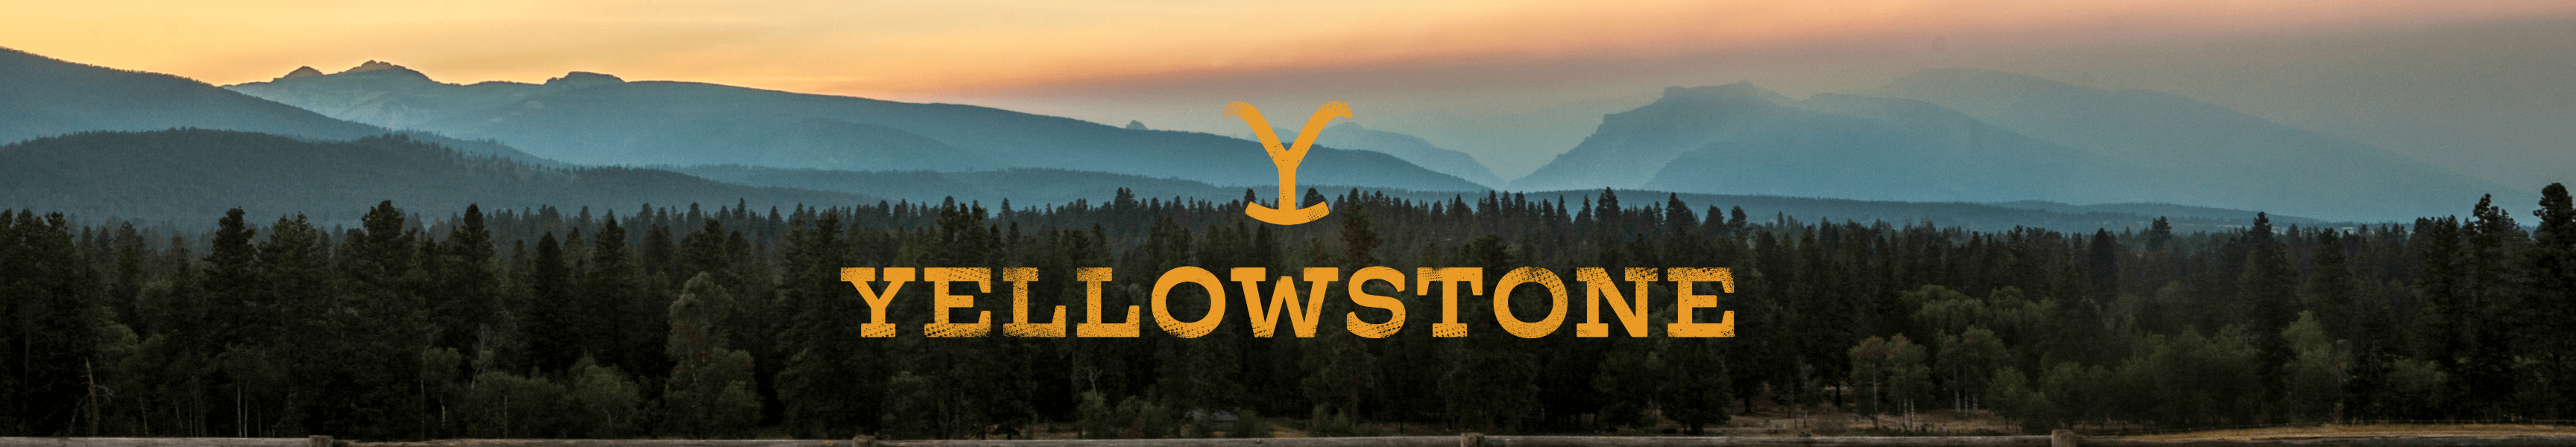 Yellowstone Standfiguren